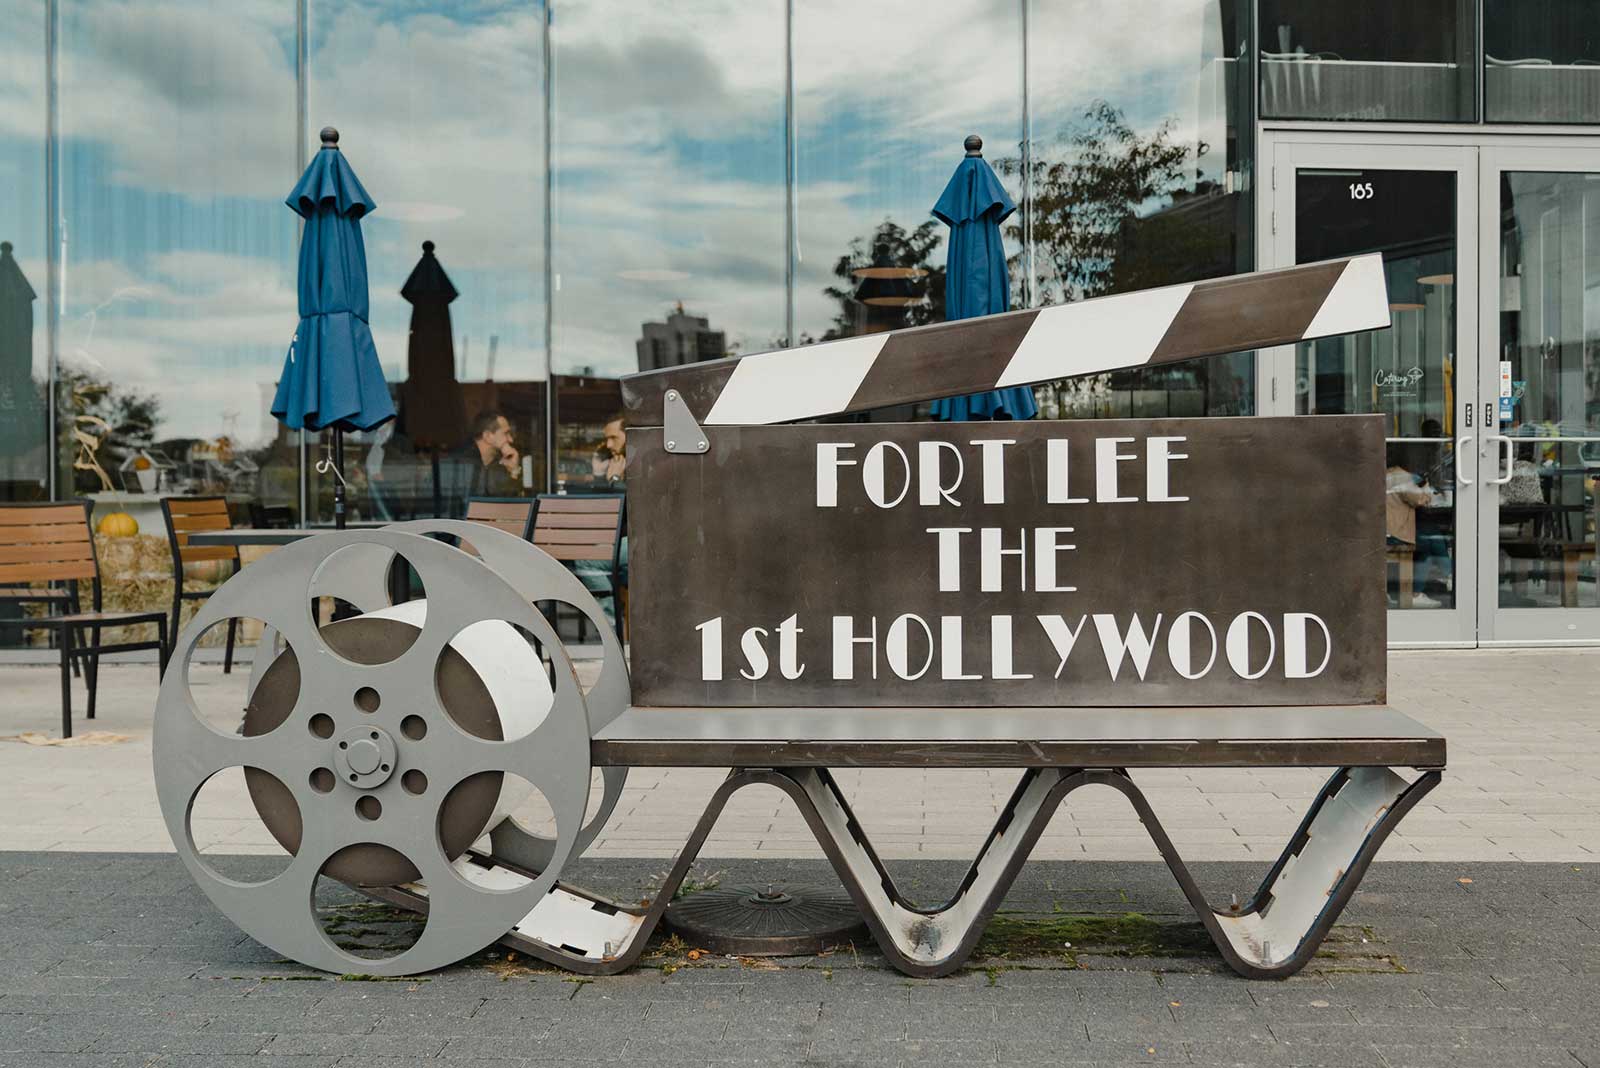 Barrymore Film Center Opens Fort Lee